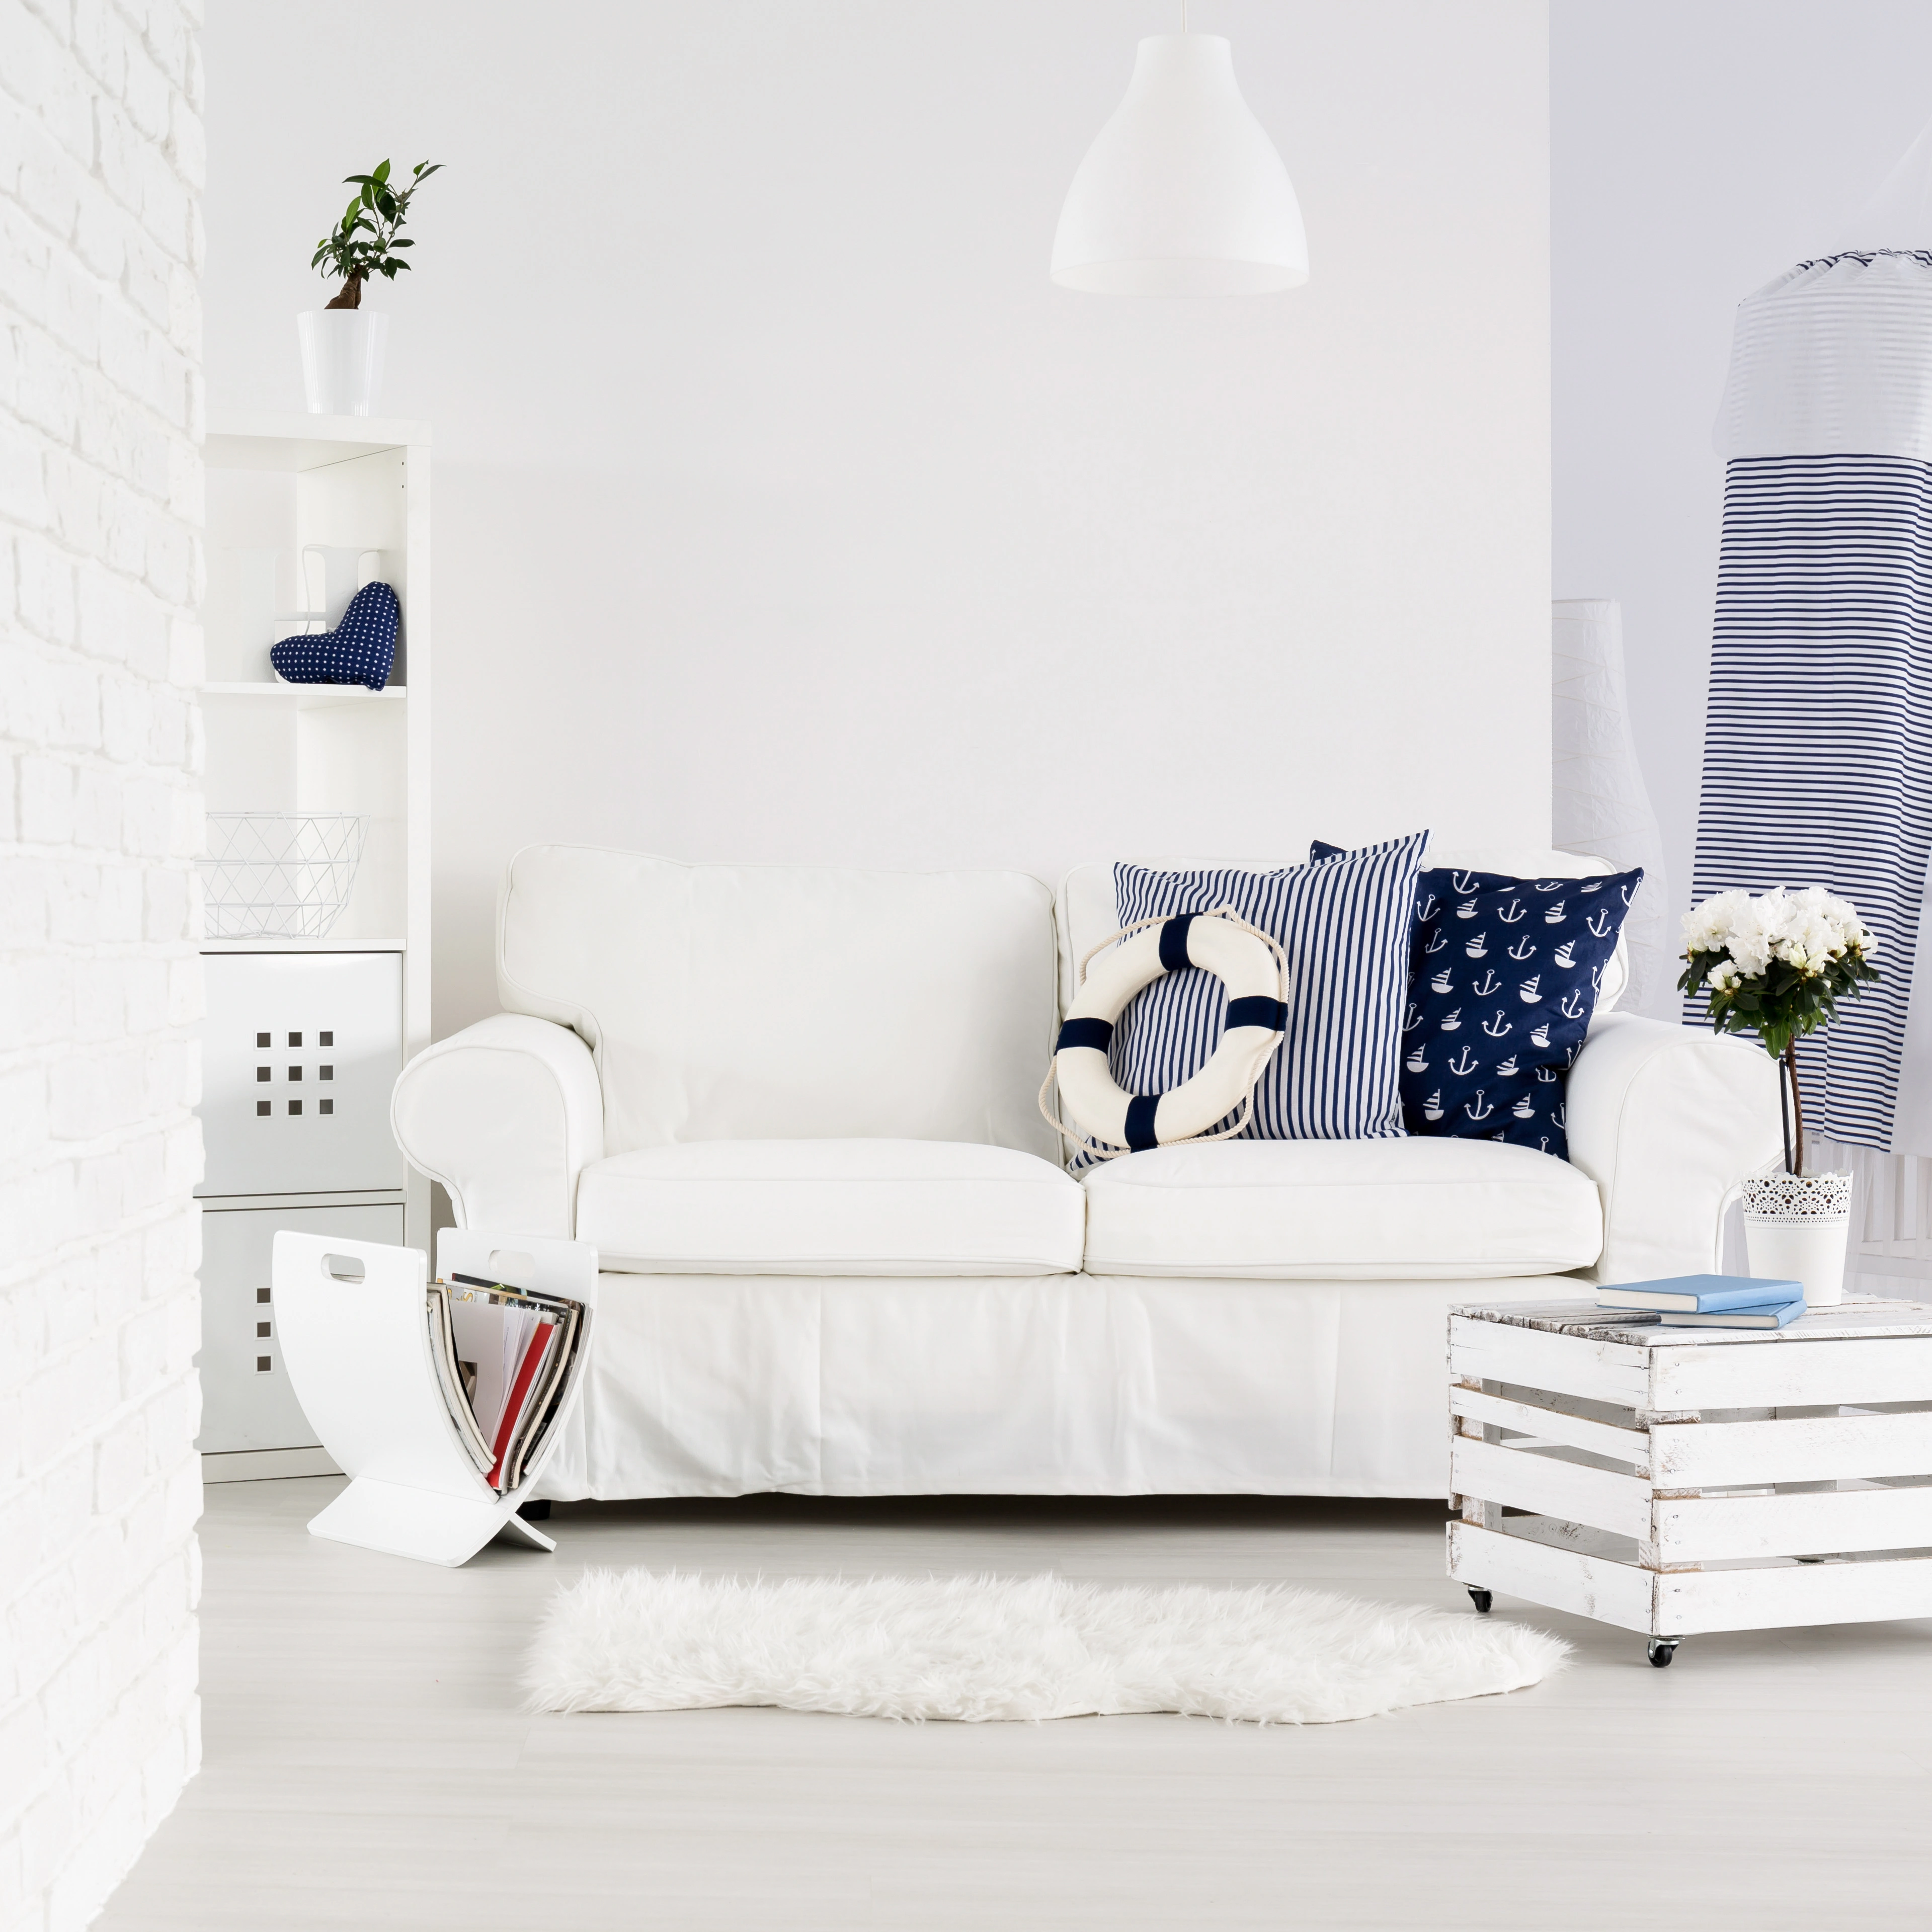 Inspiracja prezentująca salon w kolorze białym z białą kanapą i morskimi dodatkami, styl marynistyczny. Element charakterystyczny: biala kanapa z morskimi dodatkami